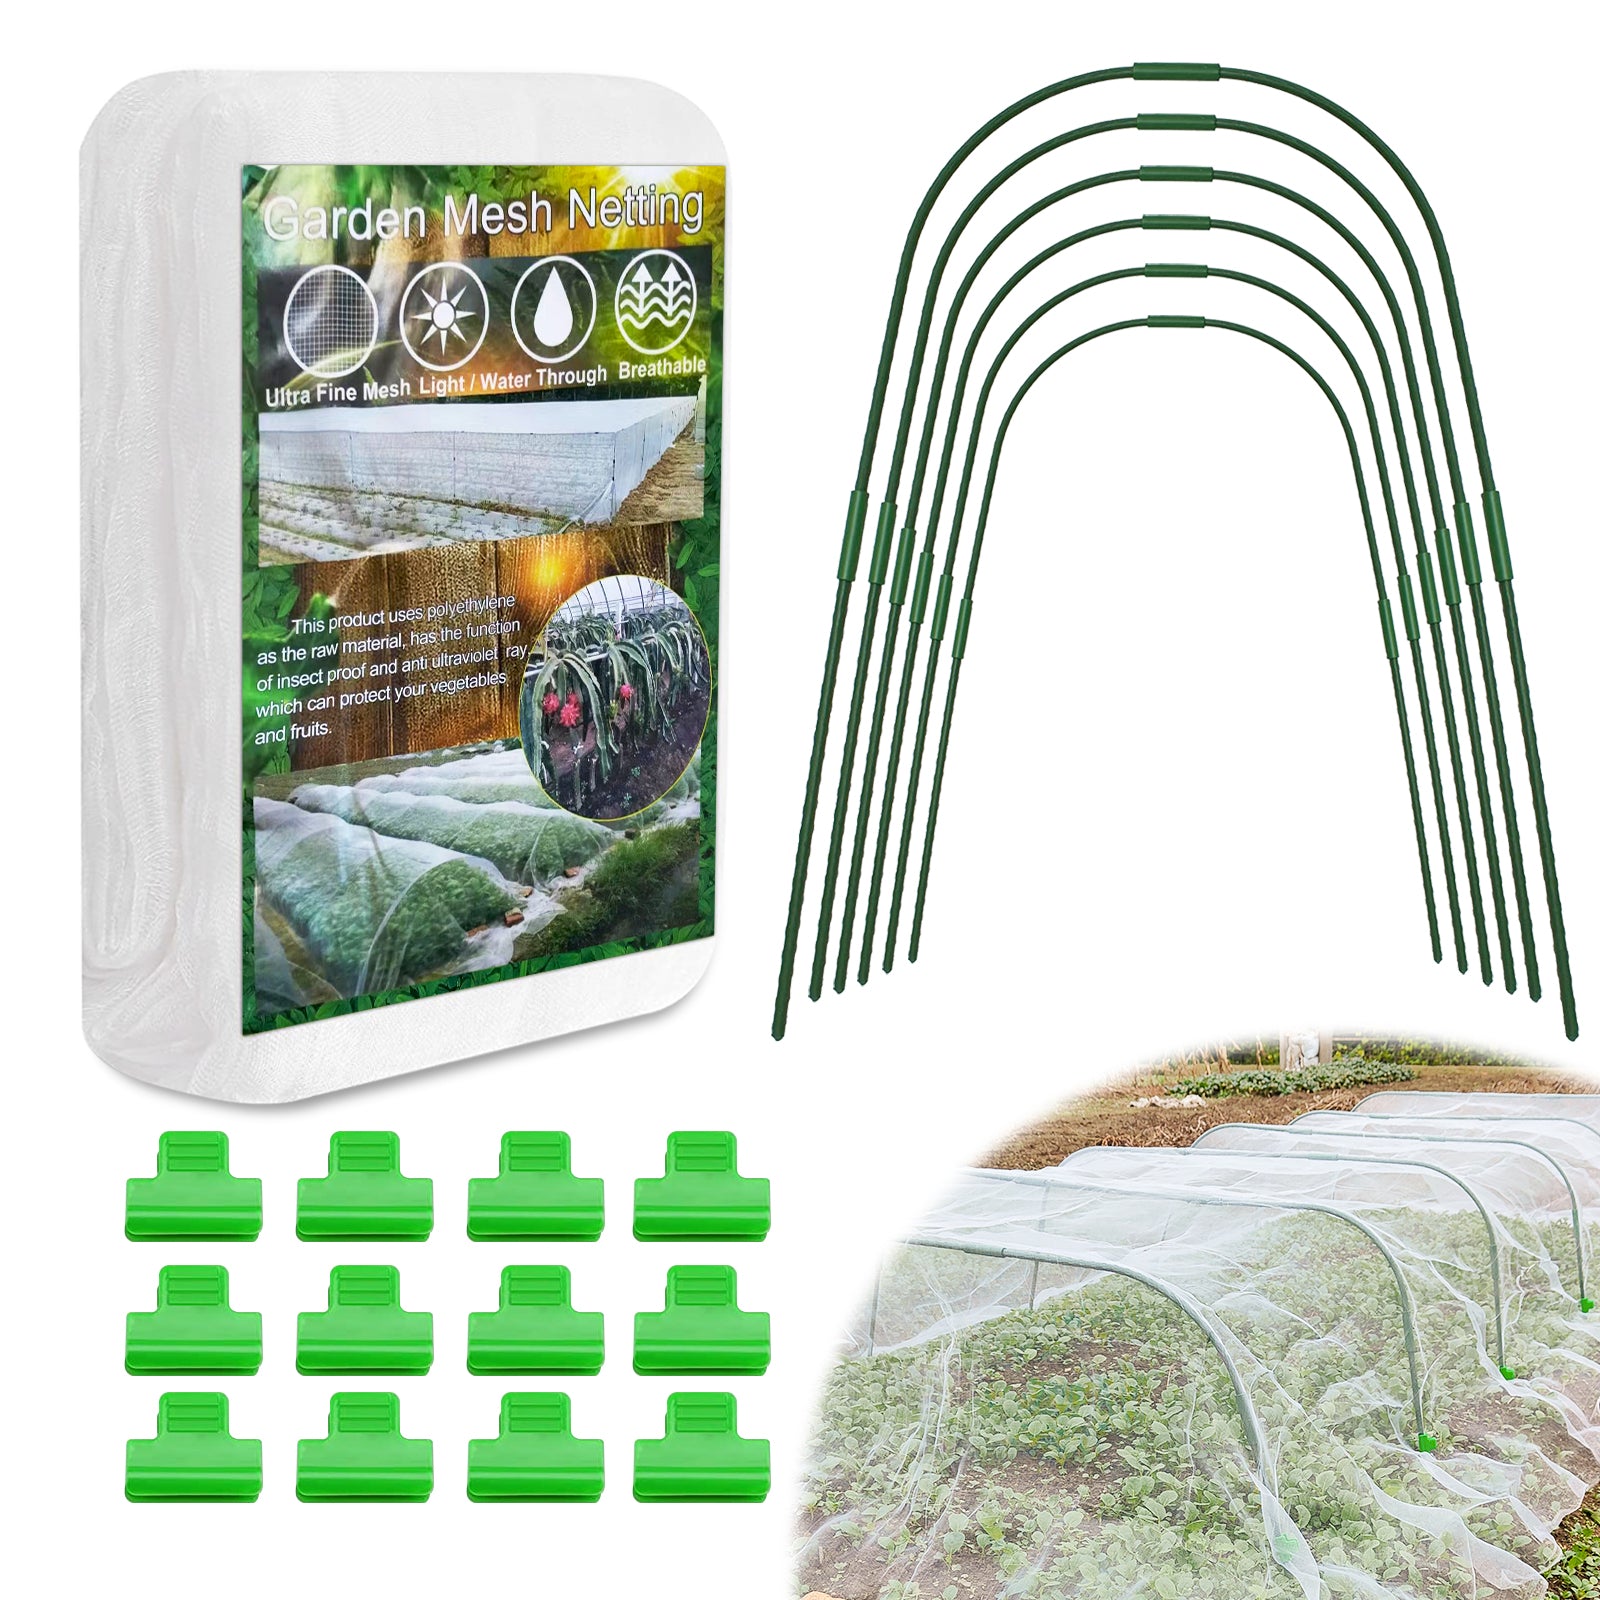 EAGLE PEAK Garden Netting Kit with 8 x 20 ft Mesh Plant Cover, 6 Packs